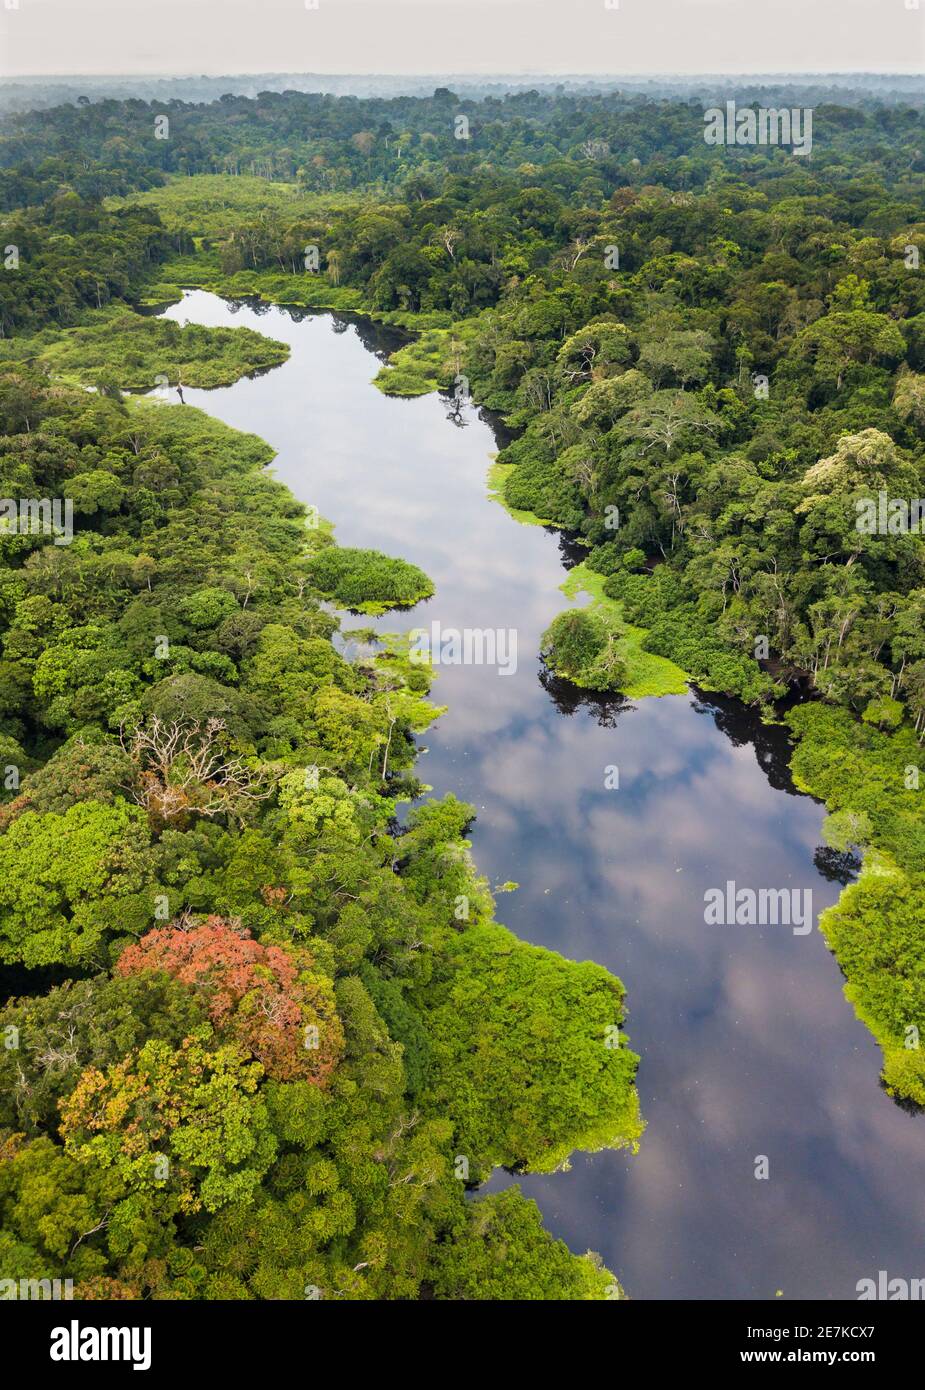 Vue aérienne de la forêt tropicale et de la rivière du bassin du Congo, Akaka, parc national de Loango, Gabon. Banque D'Images